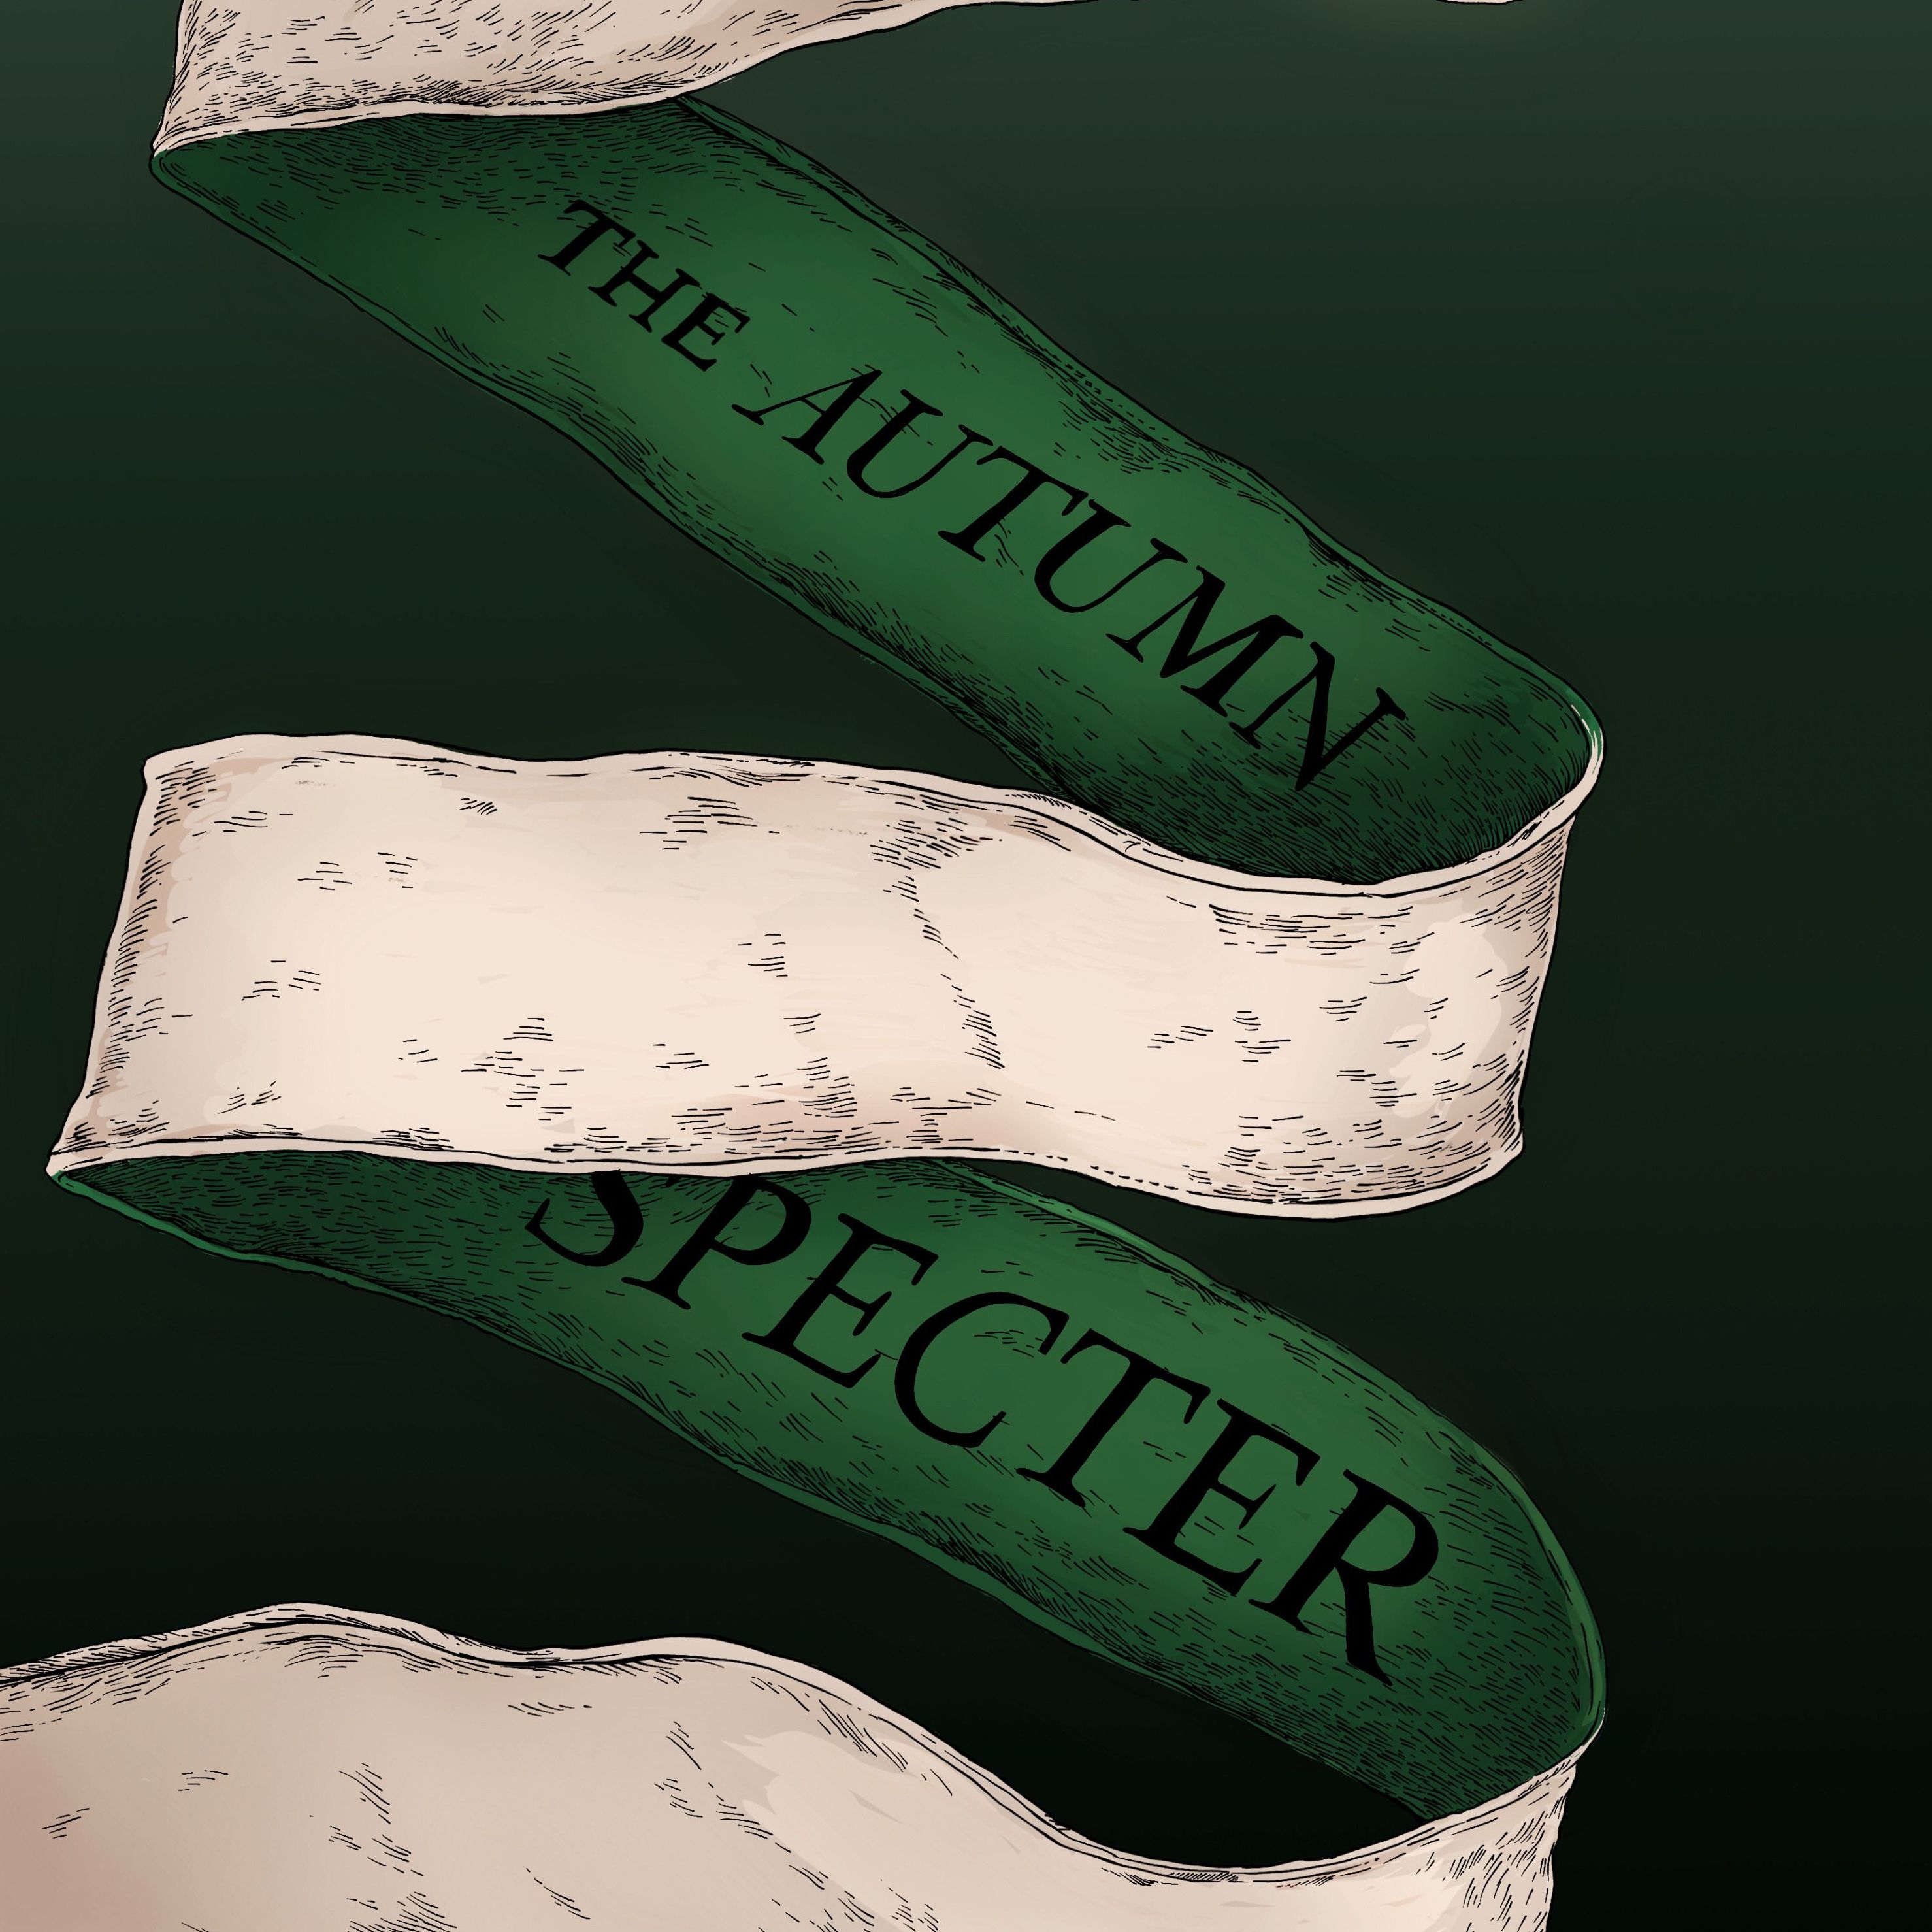 176 - The Autumn Specter